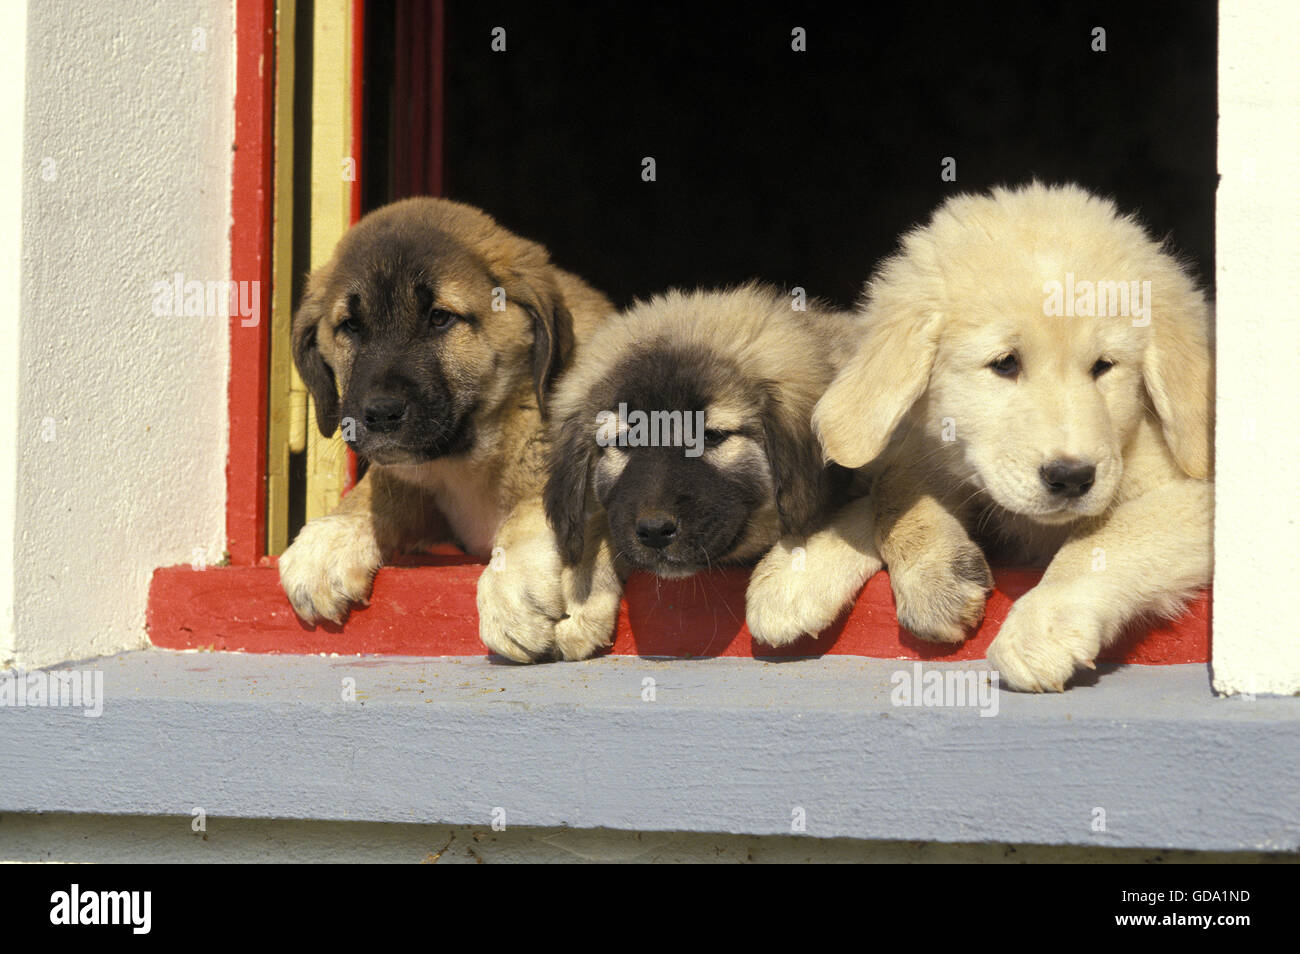 Anatolian Shepherd Dog, Pup at Window Stock Photo